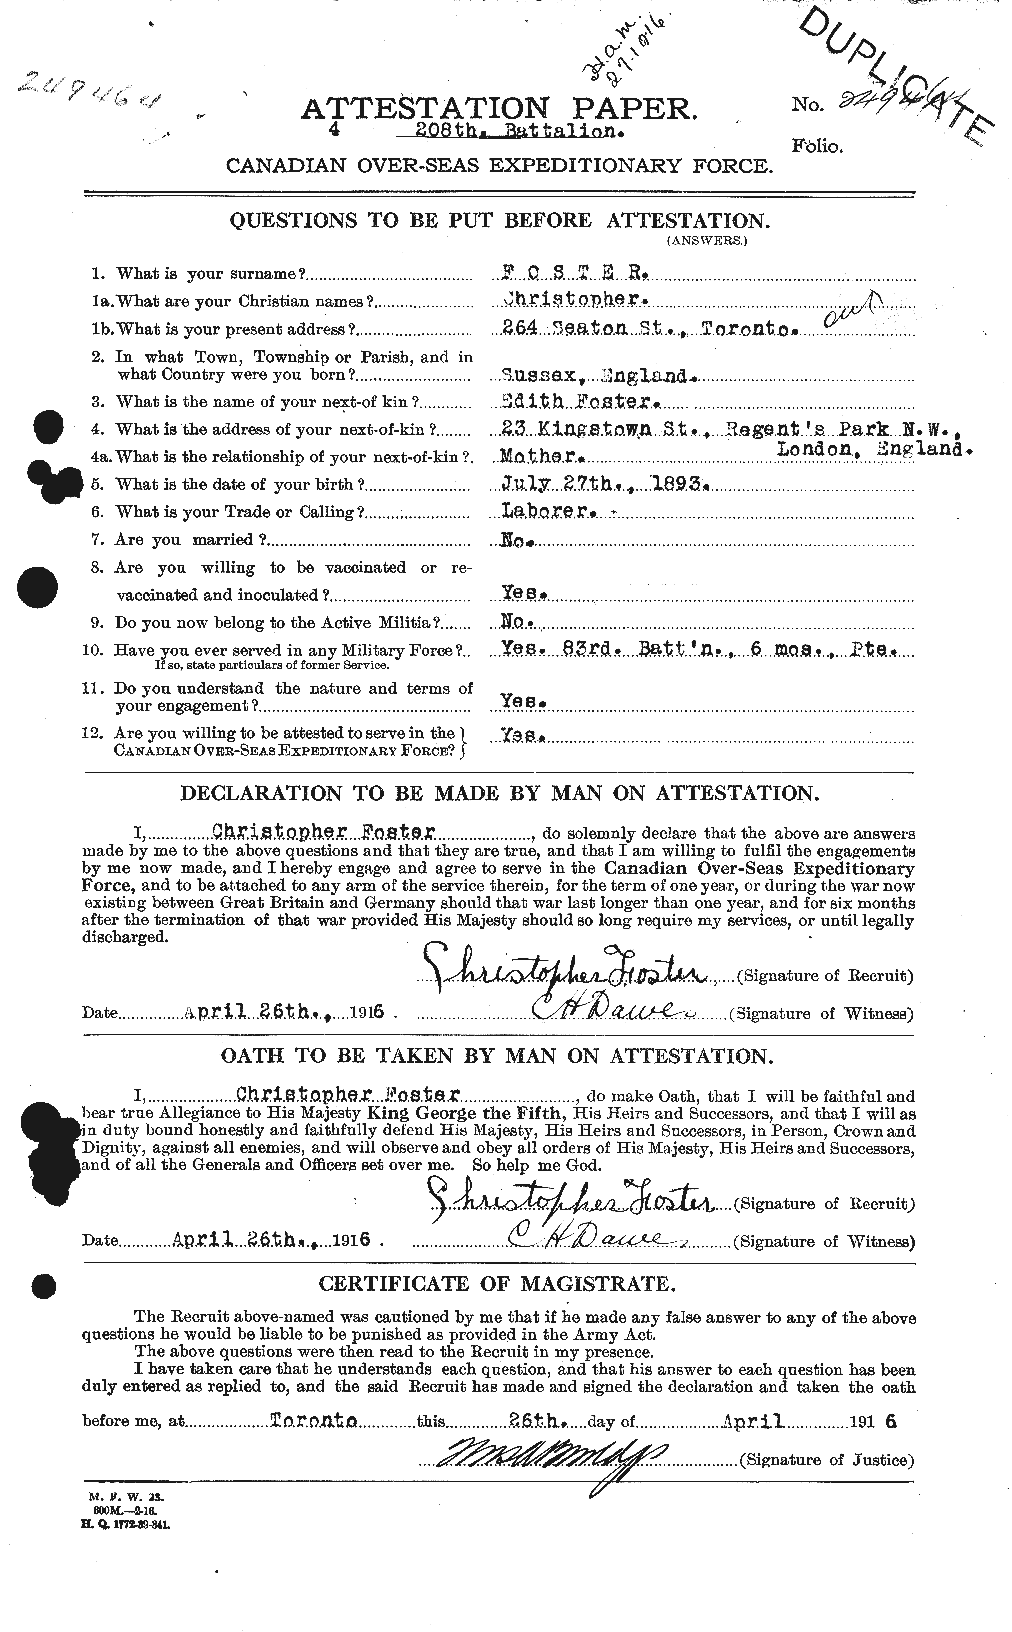 Dossiers du Personnel de la Première Guerre mondiale - CEC 330530a